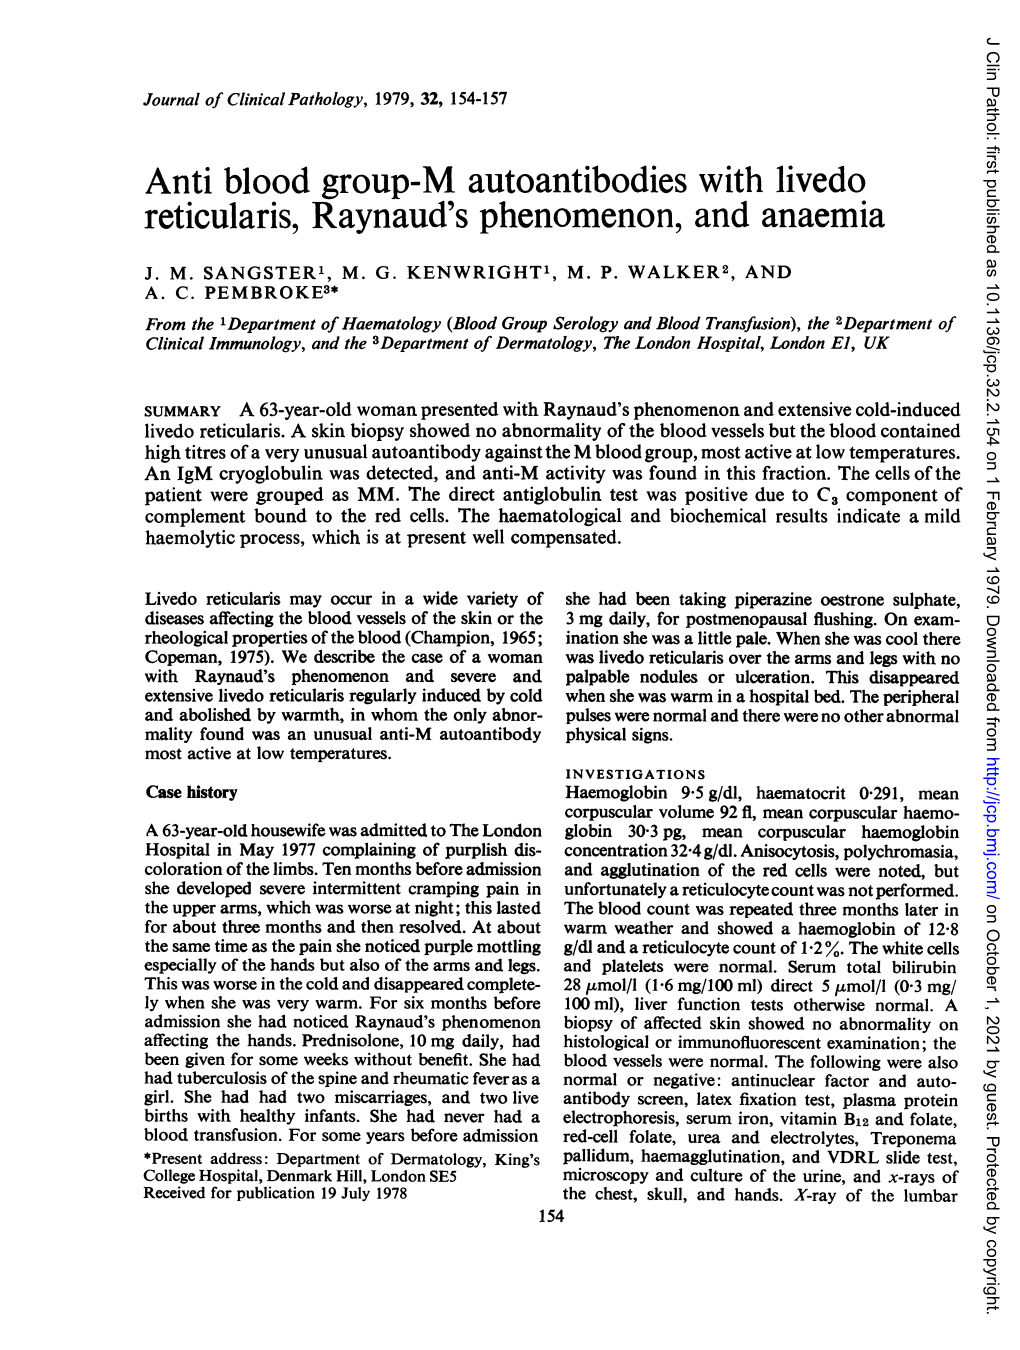 Reticularis, Raynaud's Phenomenon, and Anaemia